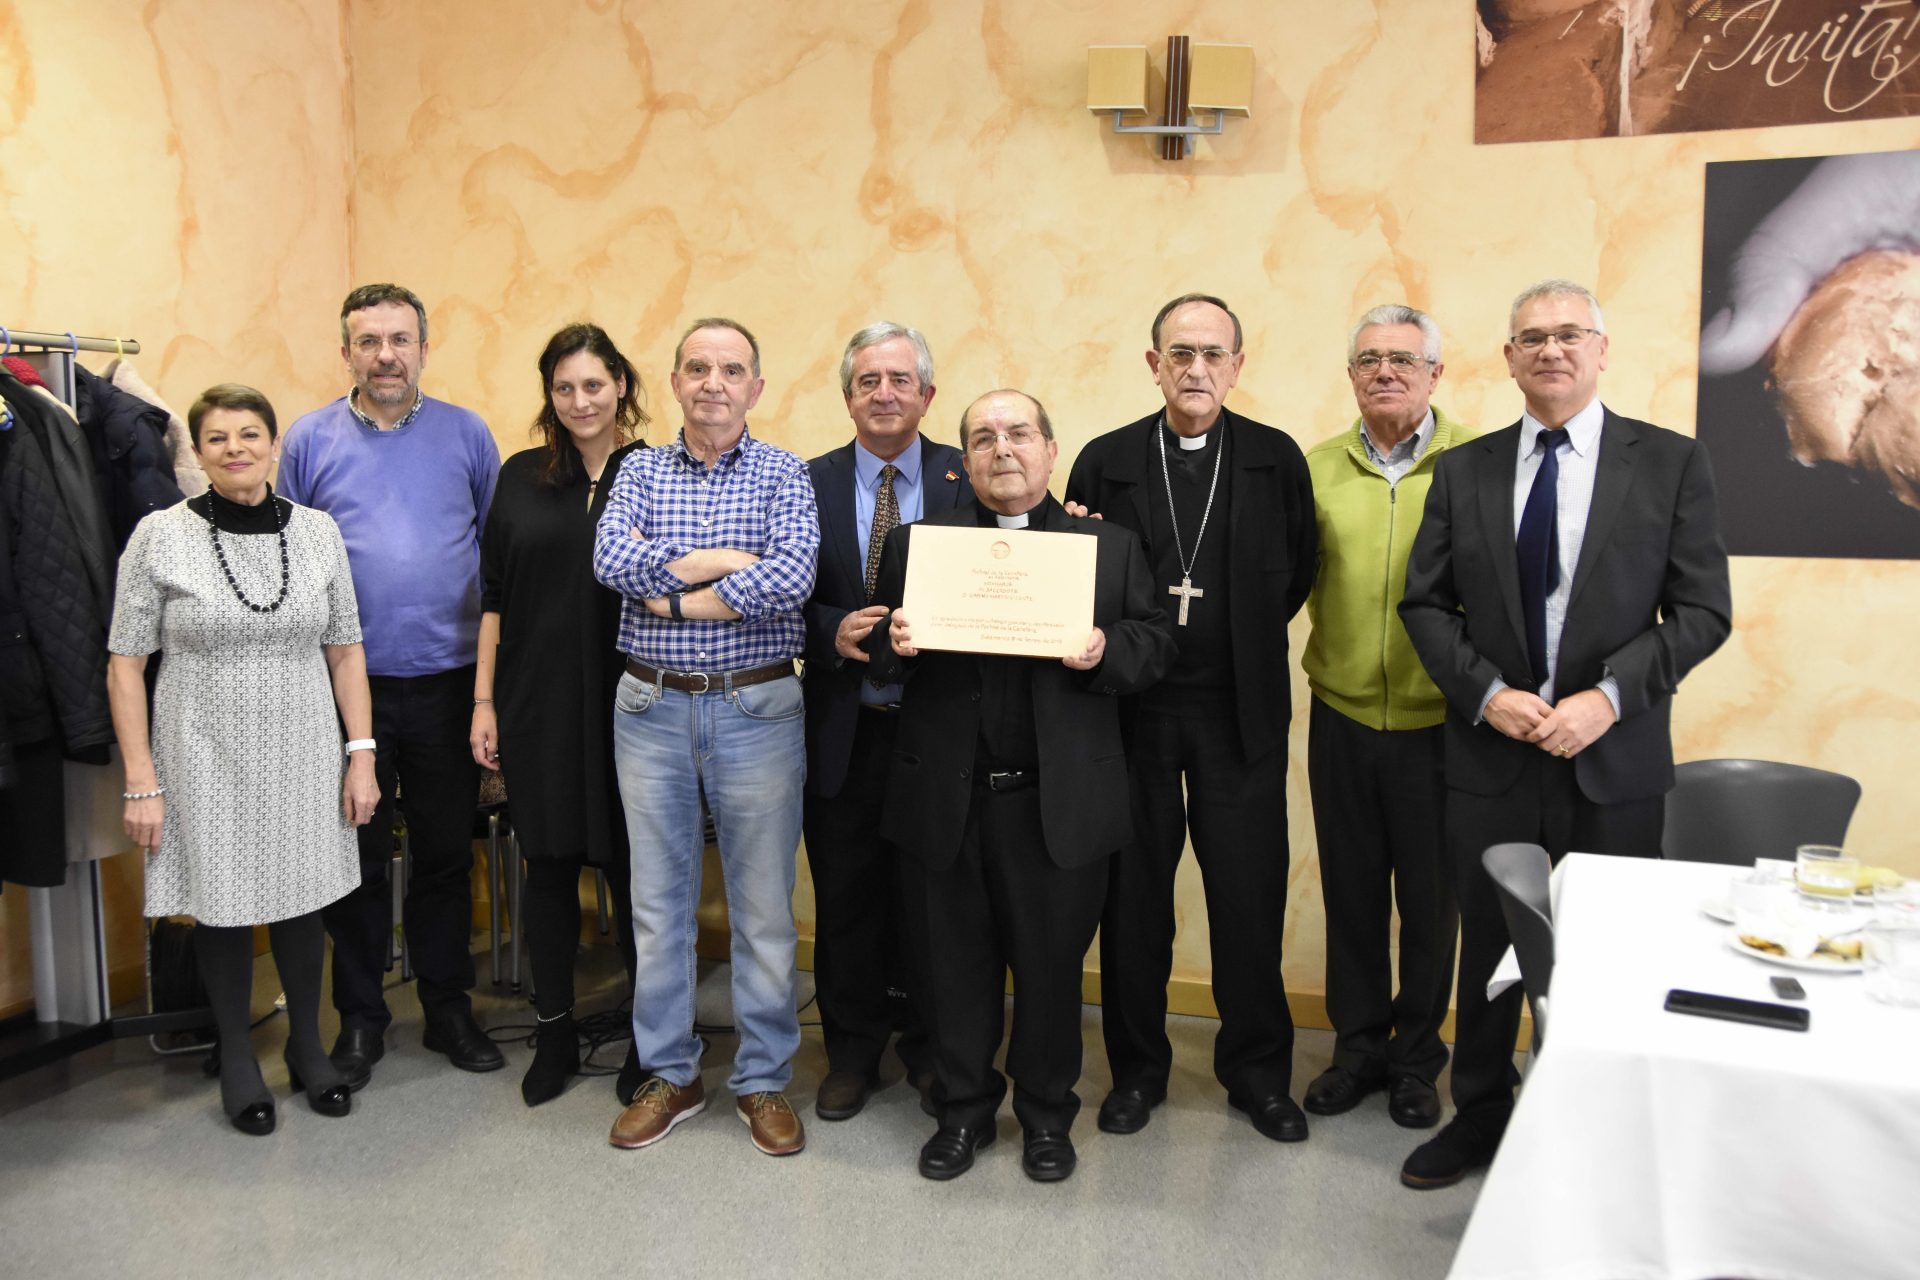 Diócesis de Salamanca, España: El diácono permanente, David González Porras, ha sido nombrado como nuevo director del servicio diocesano de Pastoral en Carretera